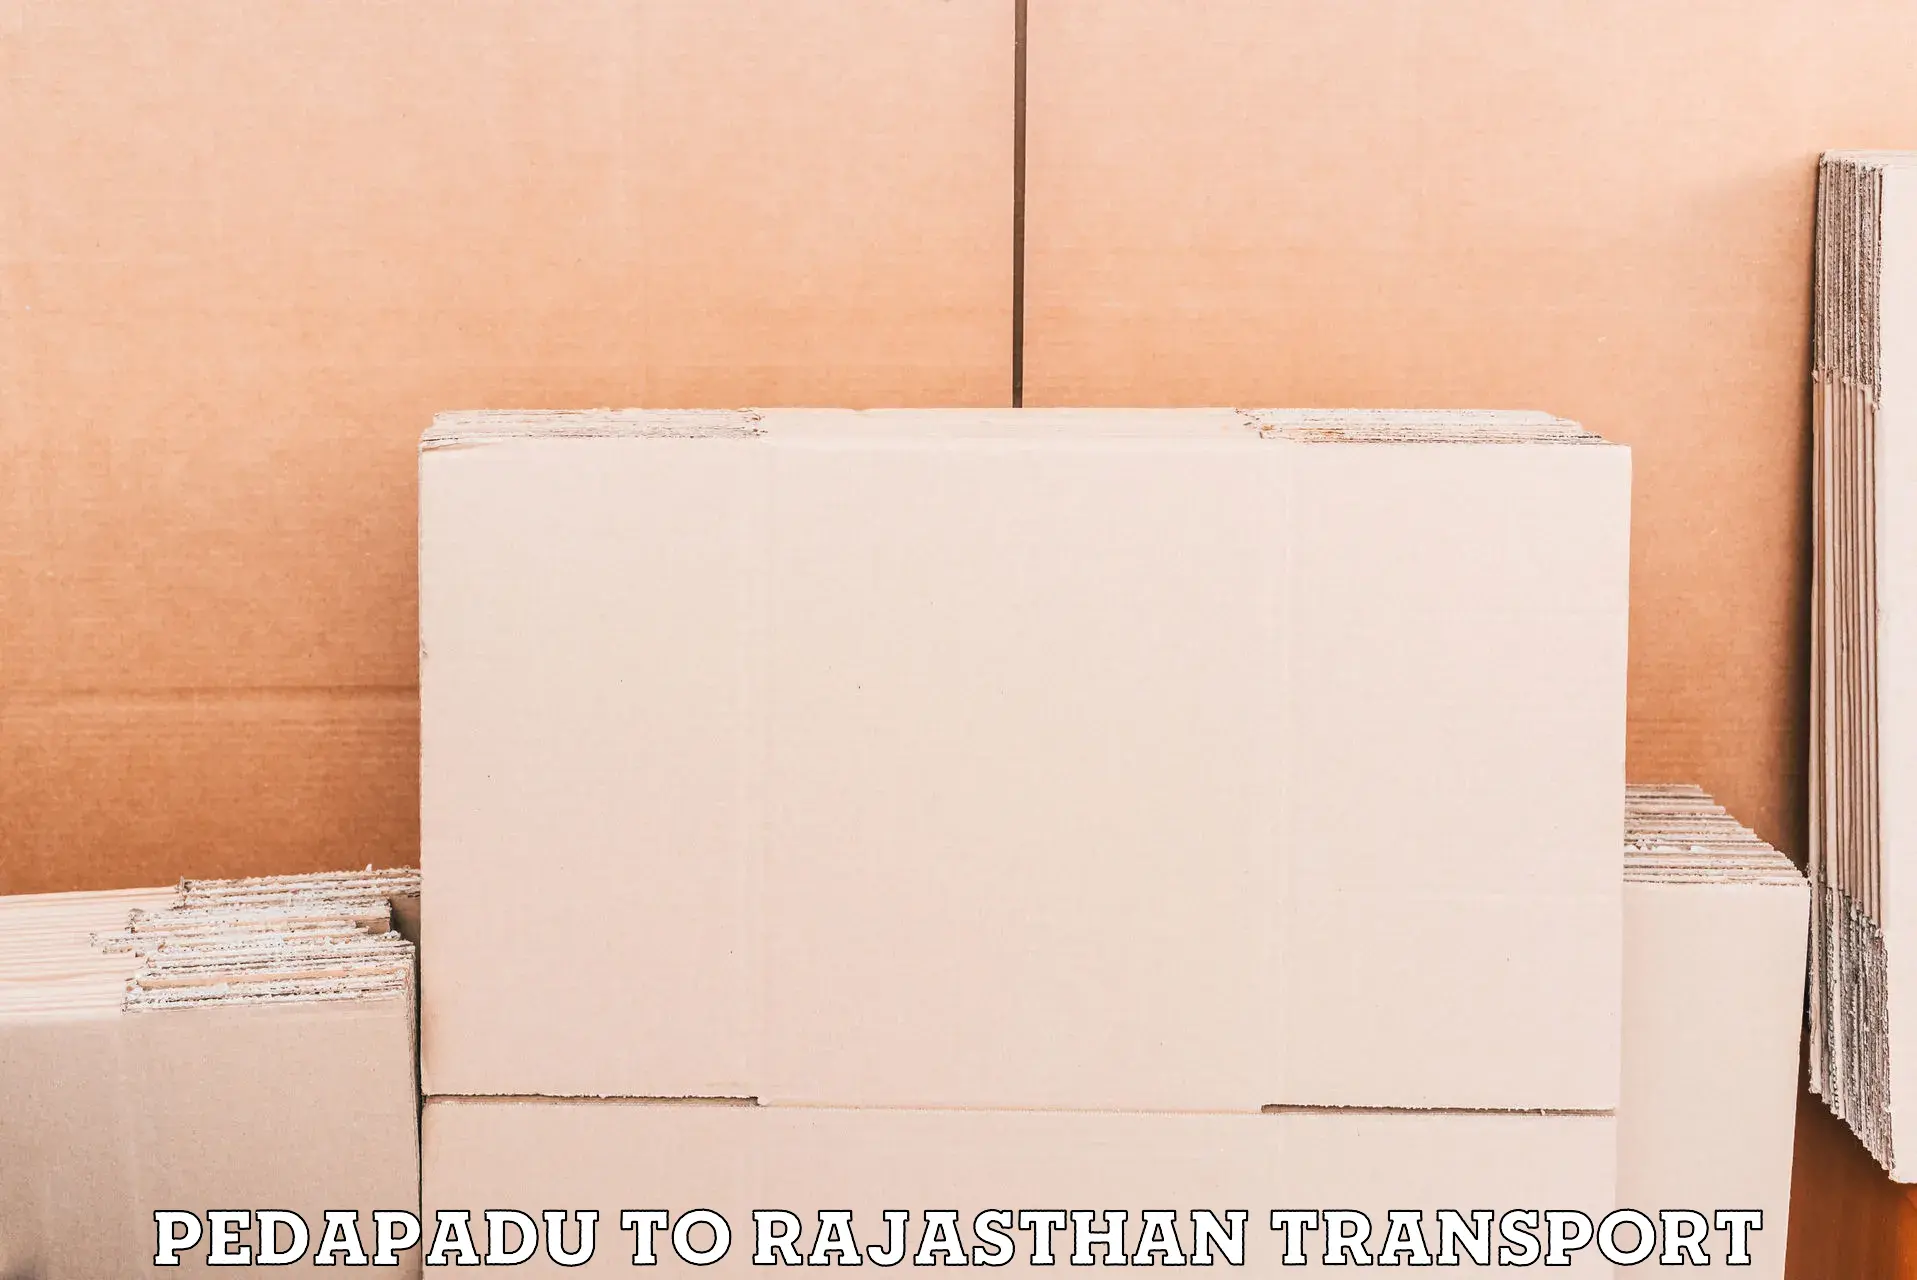 Furniture transport service Pedapadu to Gogunda